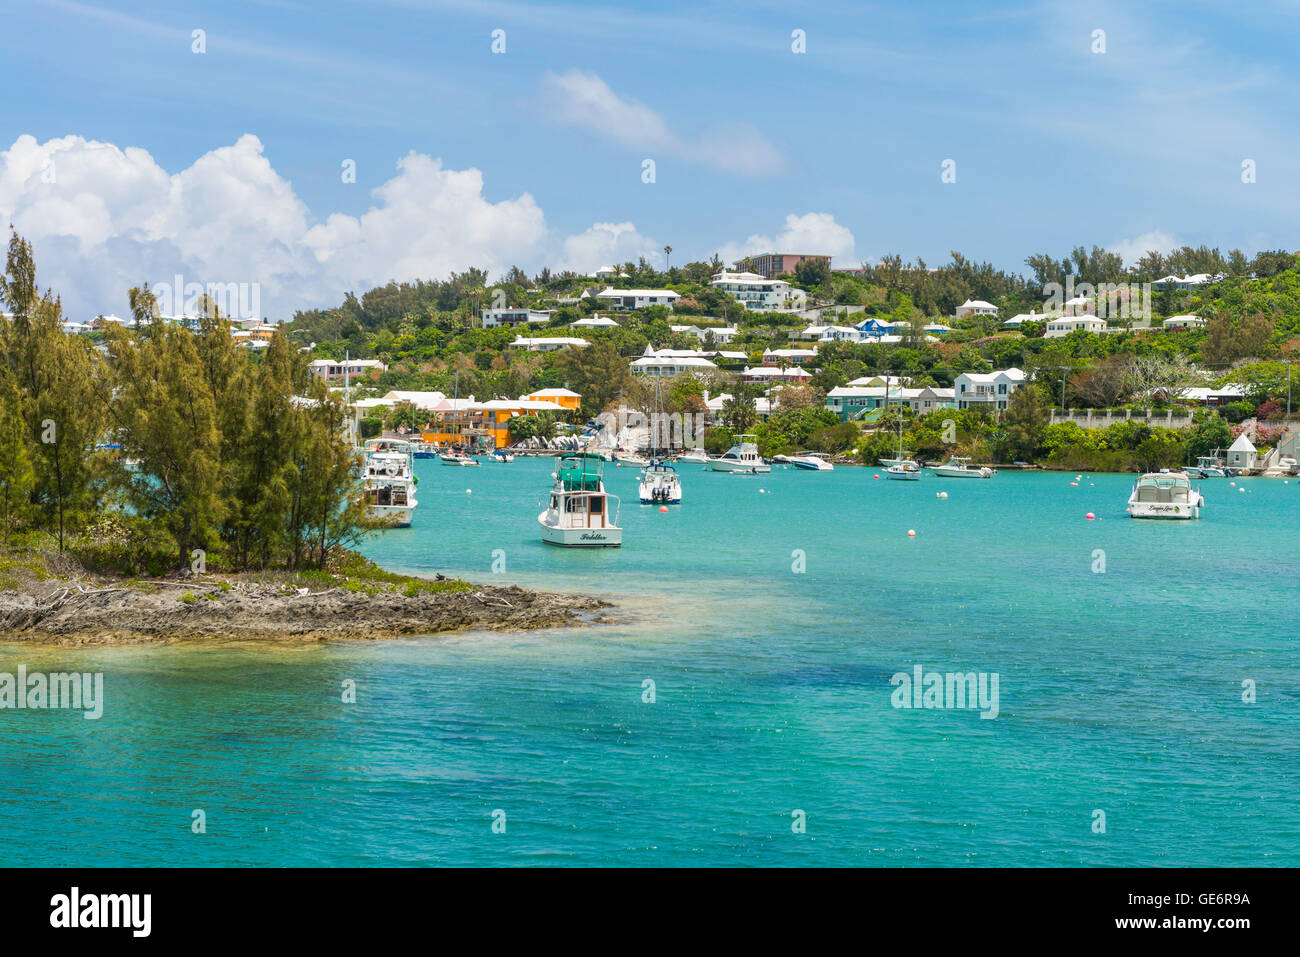 Ingresso ebreo's Bay, Bermuda, con il Fairmont Southampton resort di lusso visibile in cima alla collina. Foto Stock